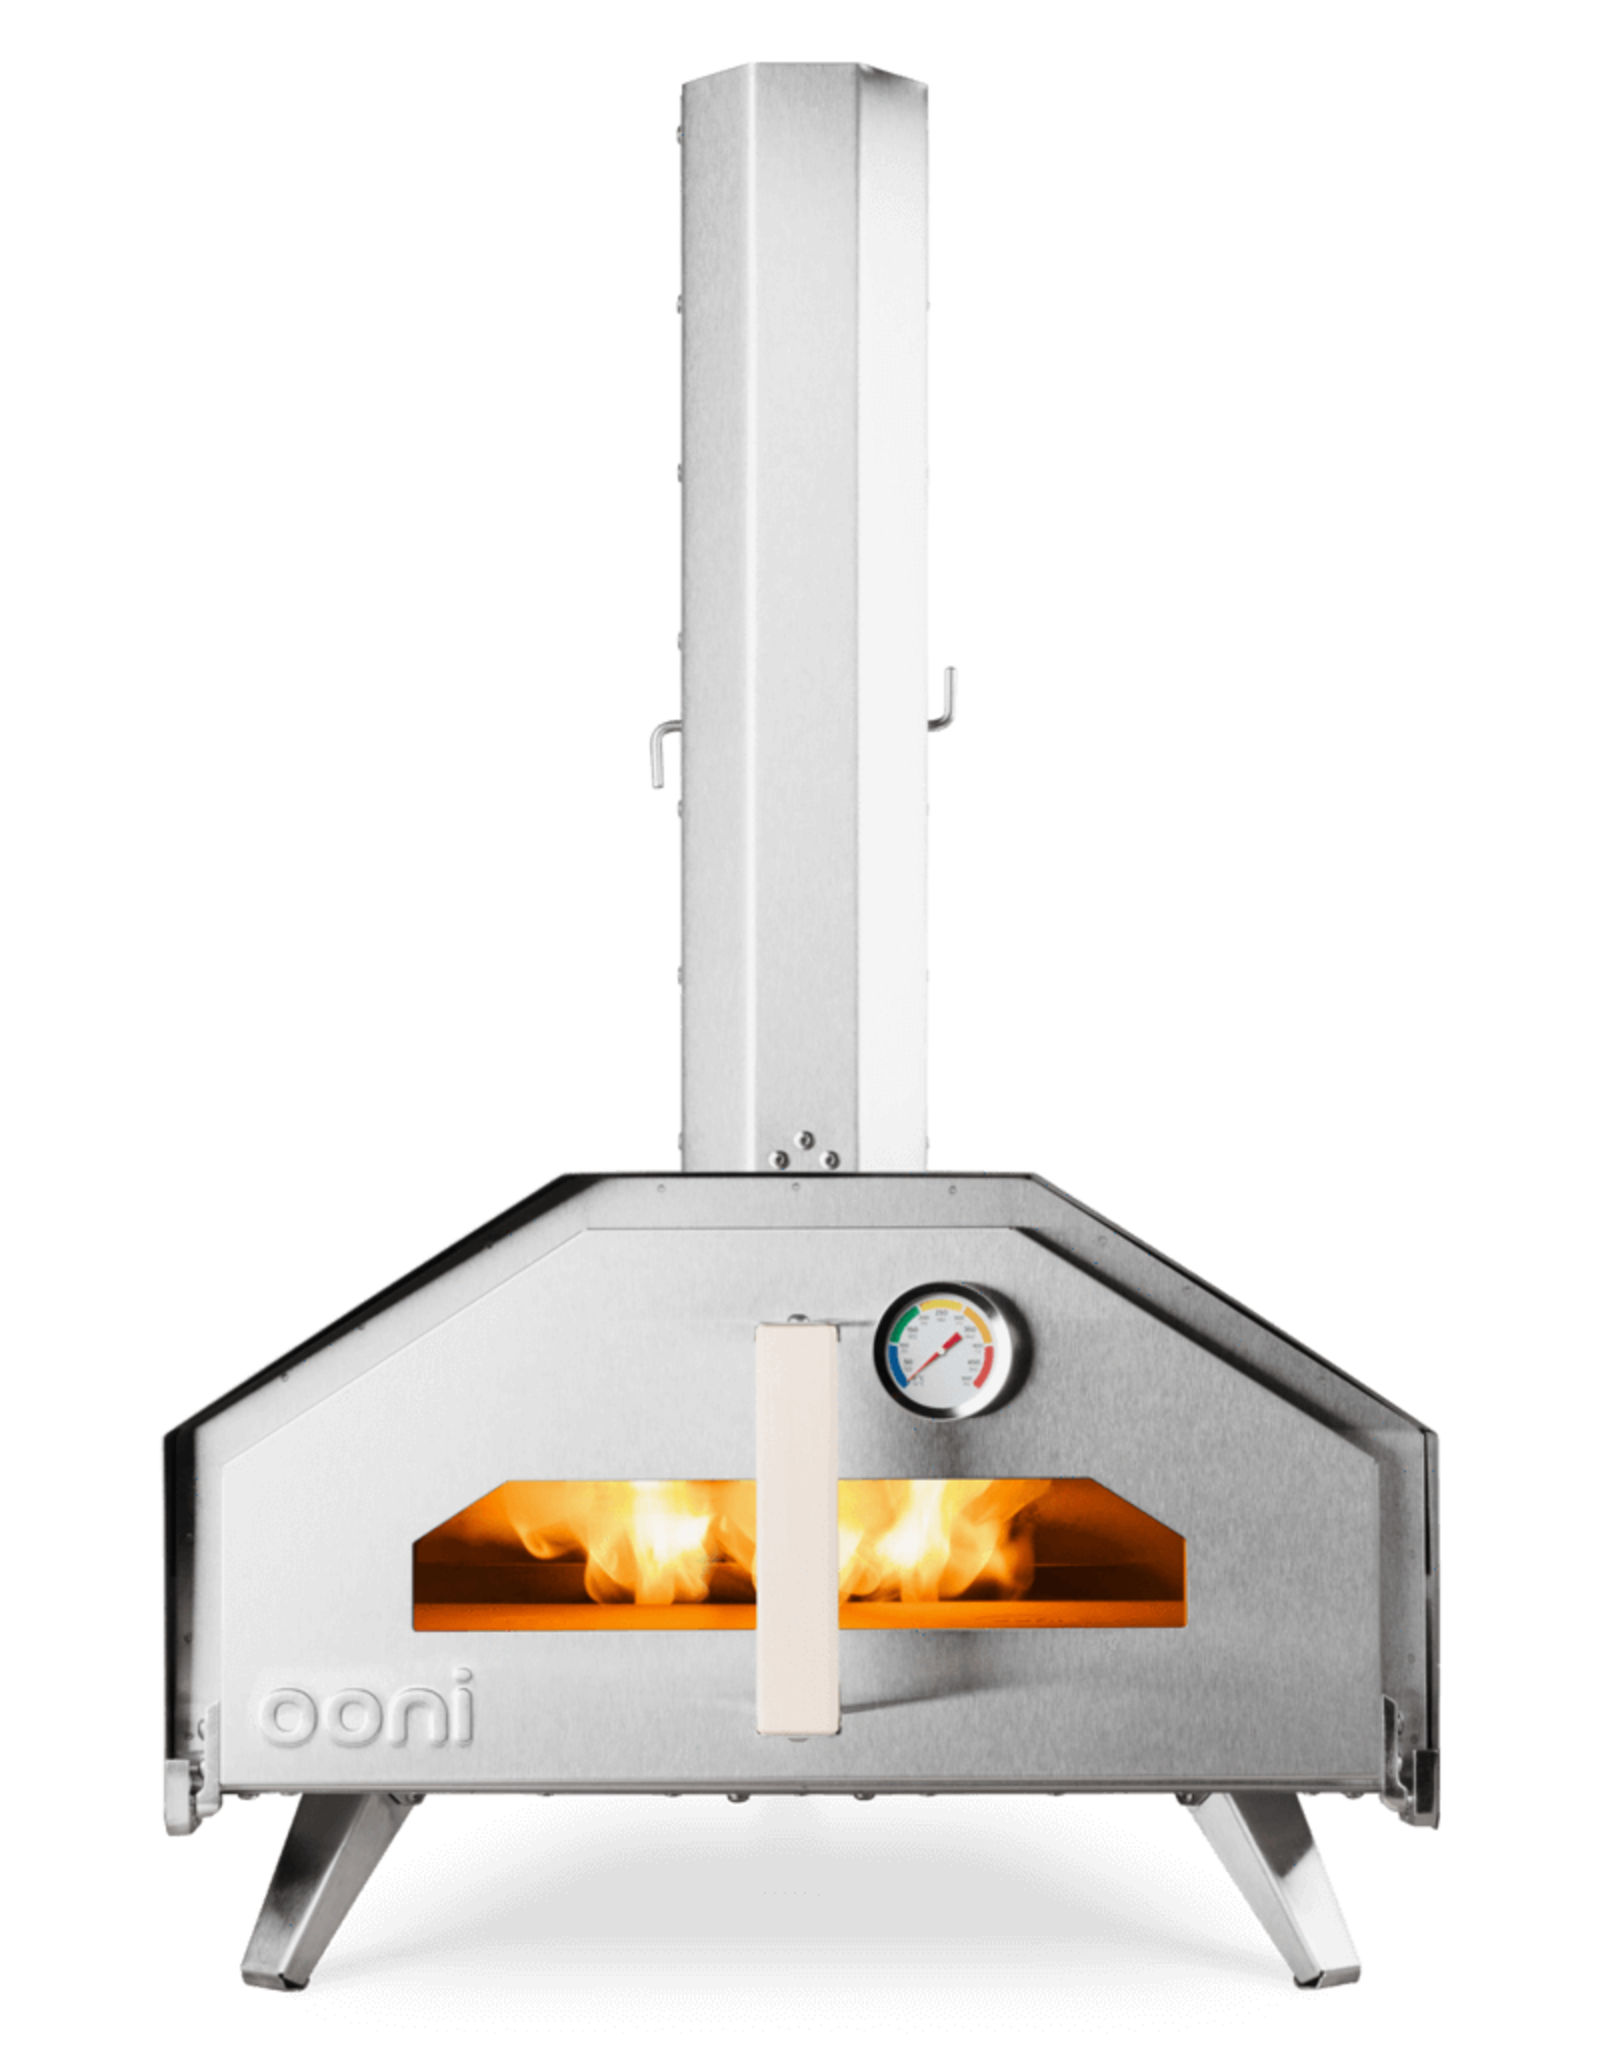 OONI Ooni Pro Multi-Fuel Pizza Oven